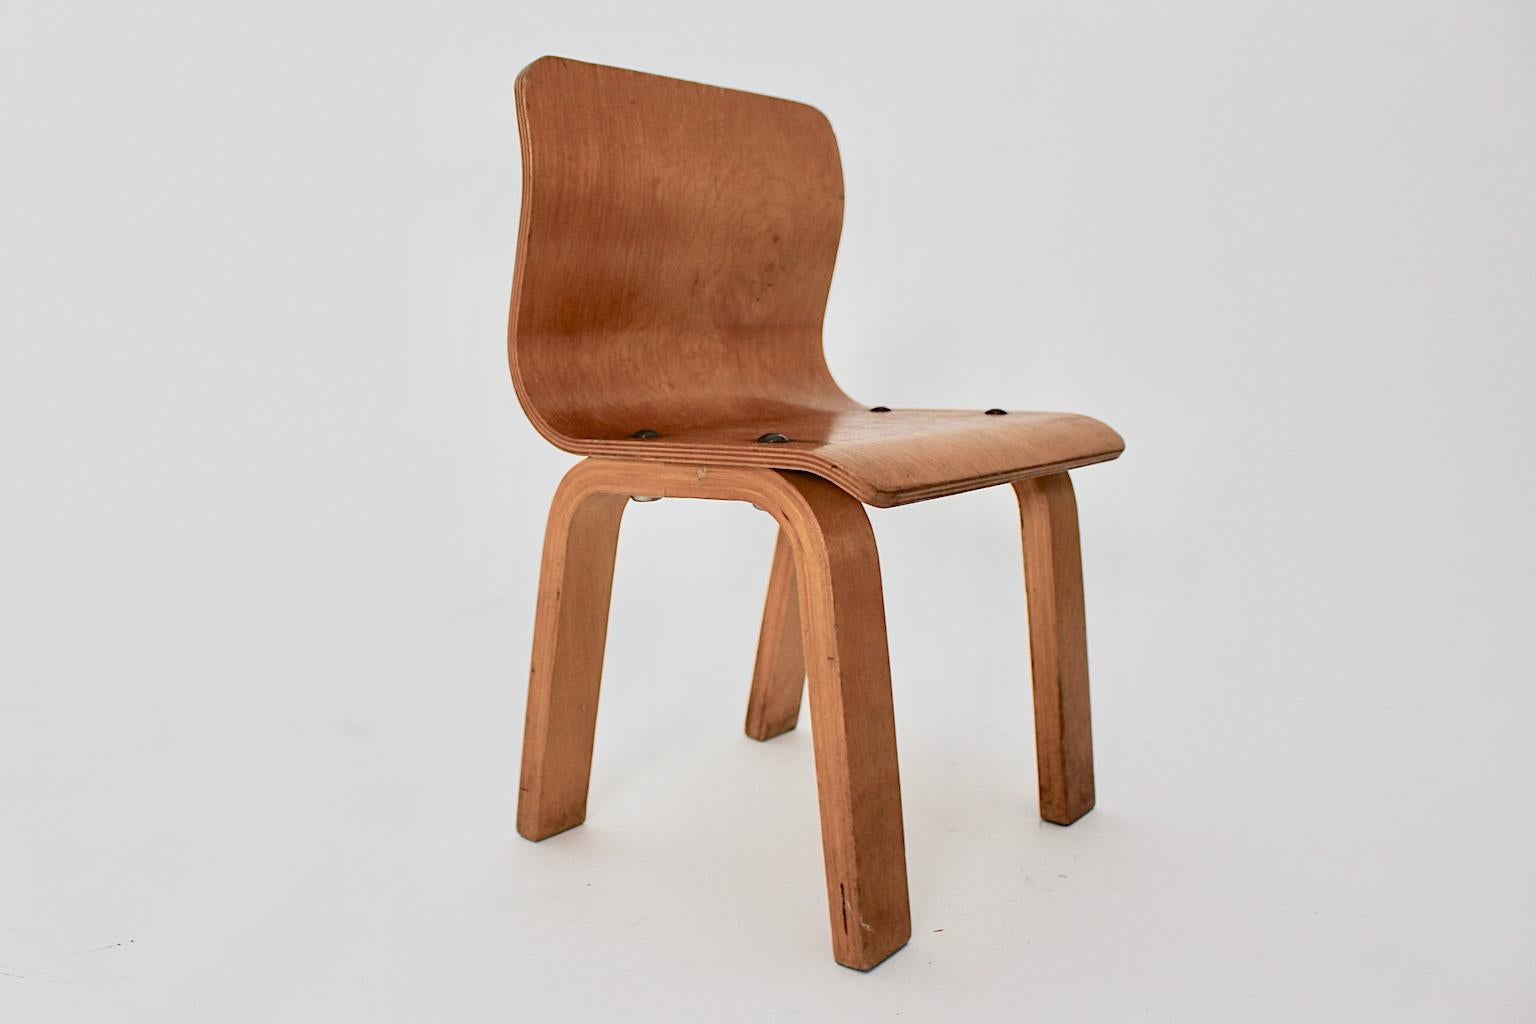 20th Century Scandinavian Modern Vintage Birch Plywood Children Chair, 1950s For Sale